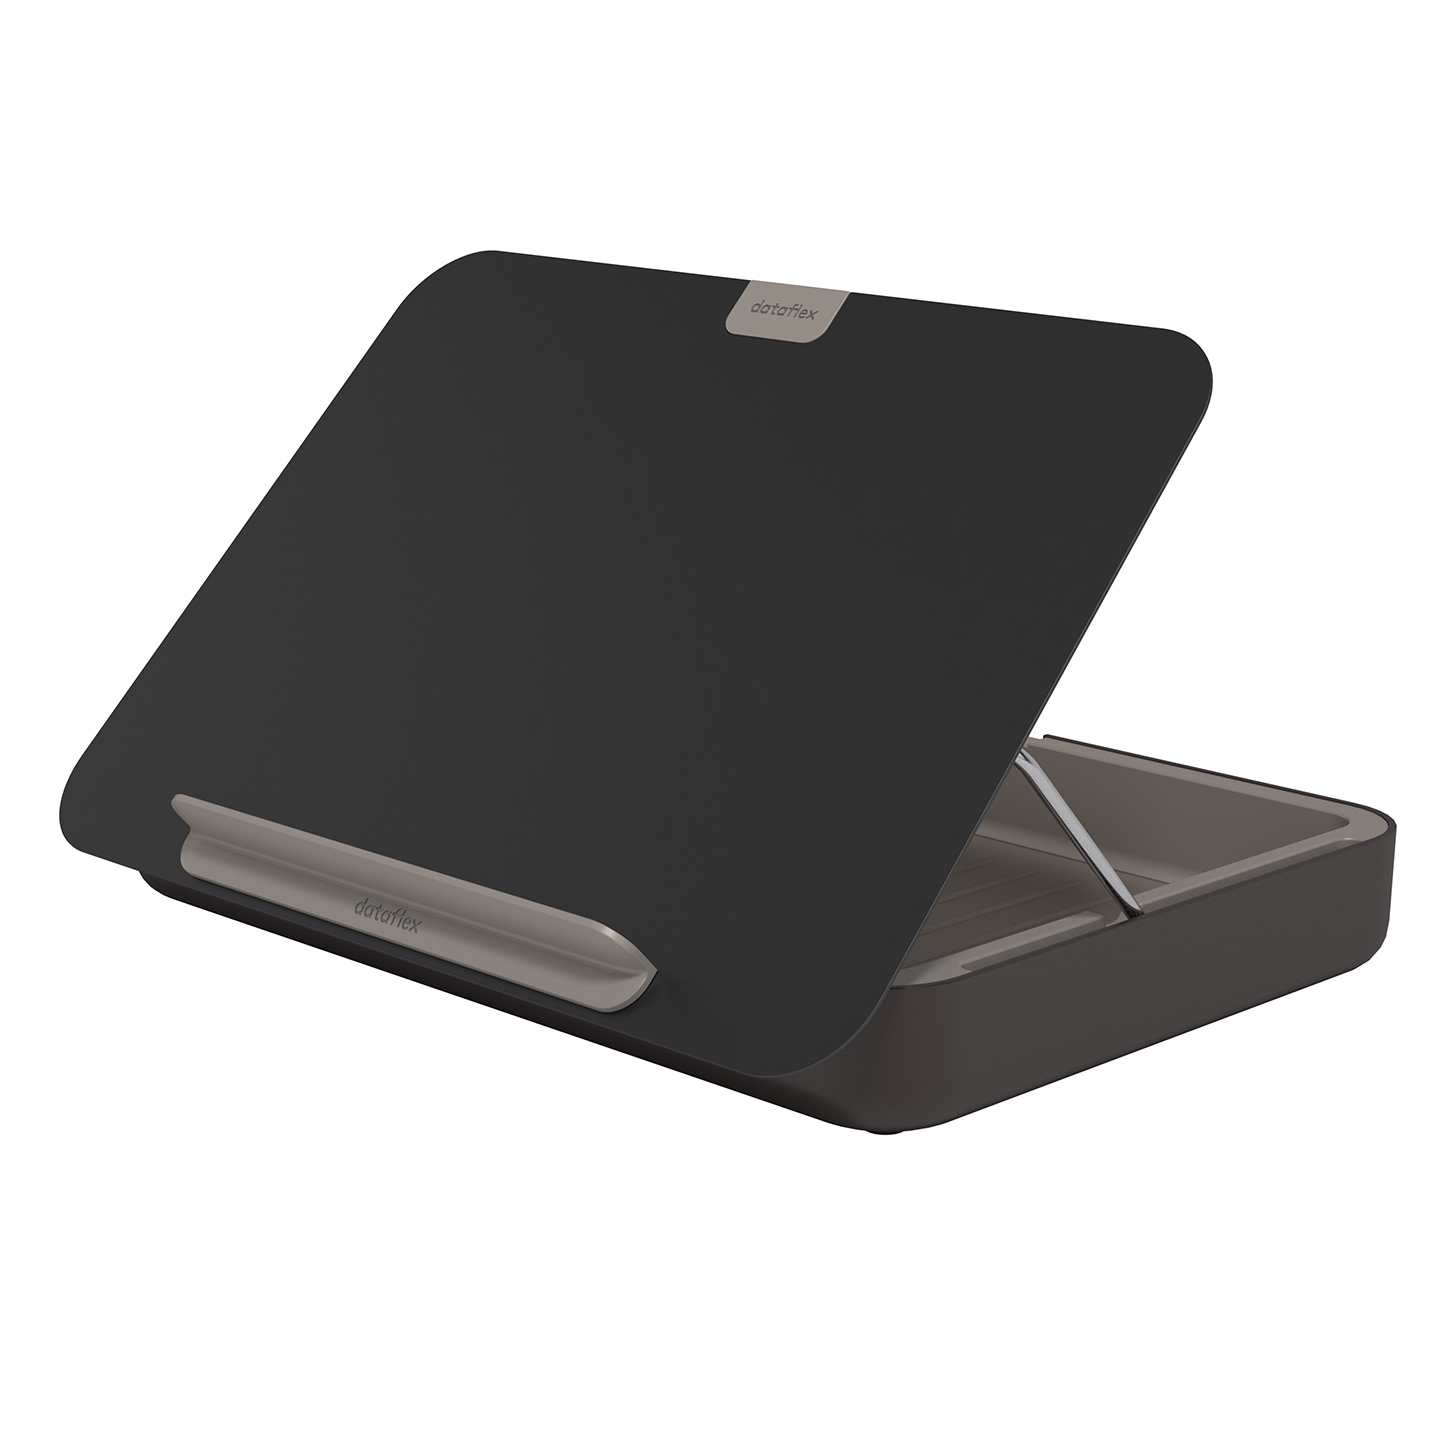 Dataflex Addit rehausseur ordinateur portable - réglable 450 - Acrylique  trans